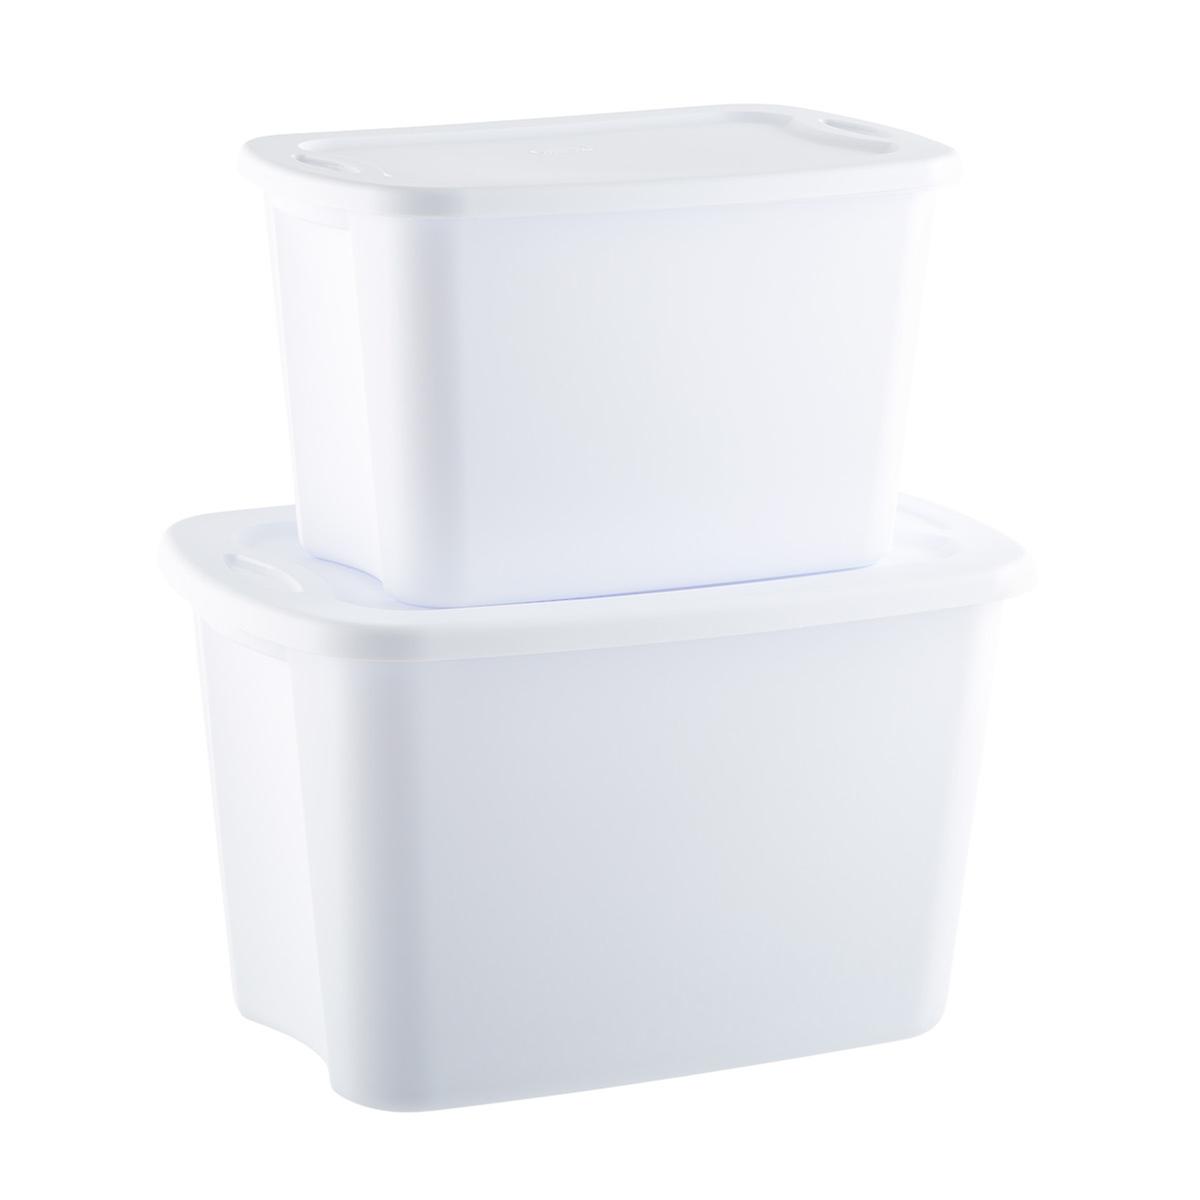 Thick Plastic Storage Basket Kitchen Bathroom Container Organizer Baskets Holder 